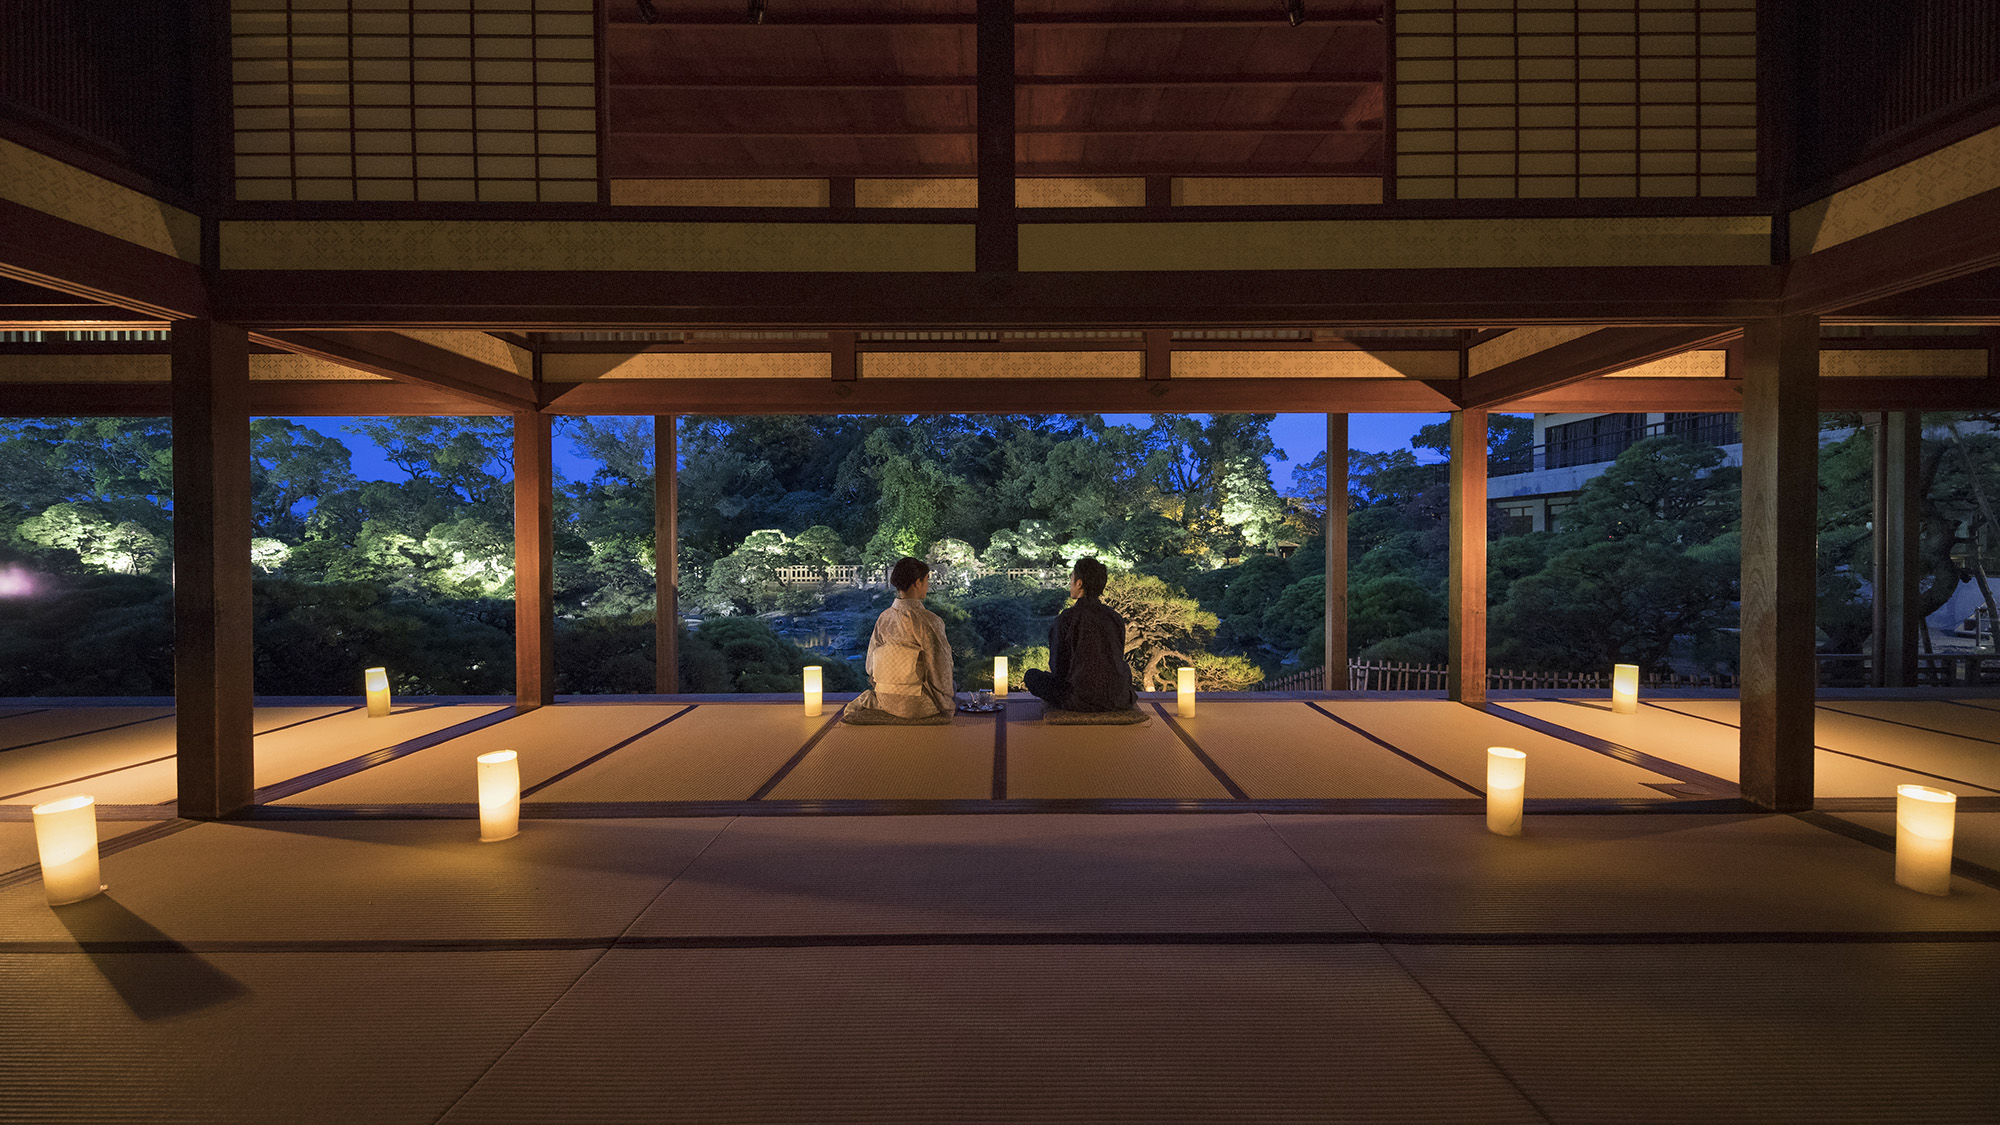 *・宿泊者限定で夜の大広間を開放しております。淡い光が映し出す美しい松濤園をご堪能ください。